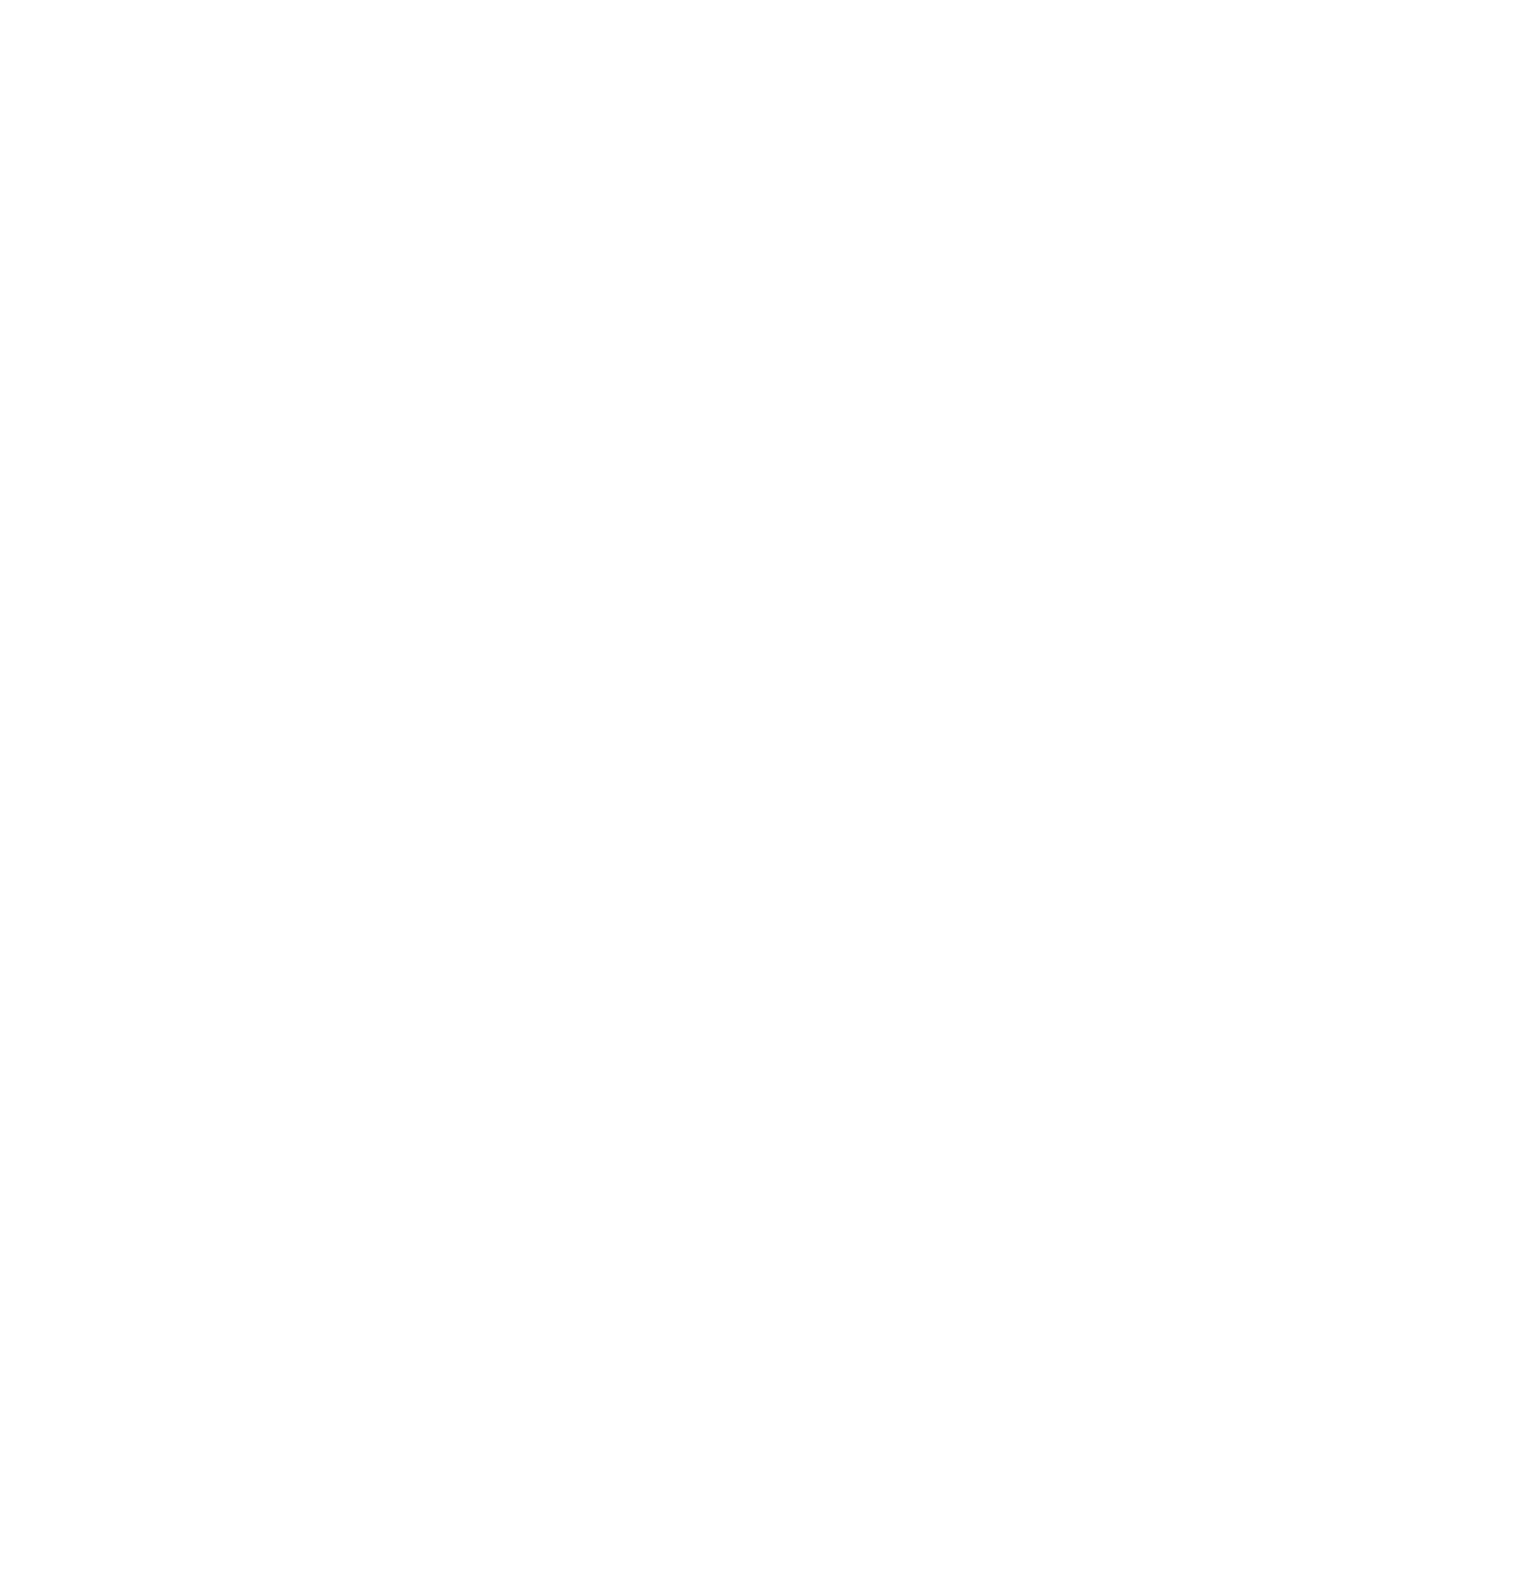 Amphenol logo pour fonds sombres (PNG transparent)